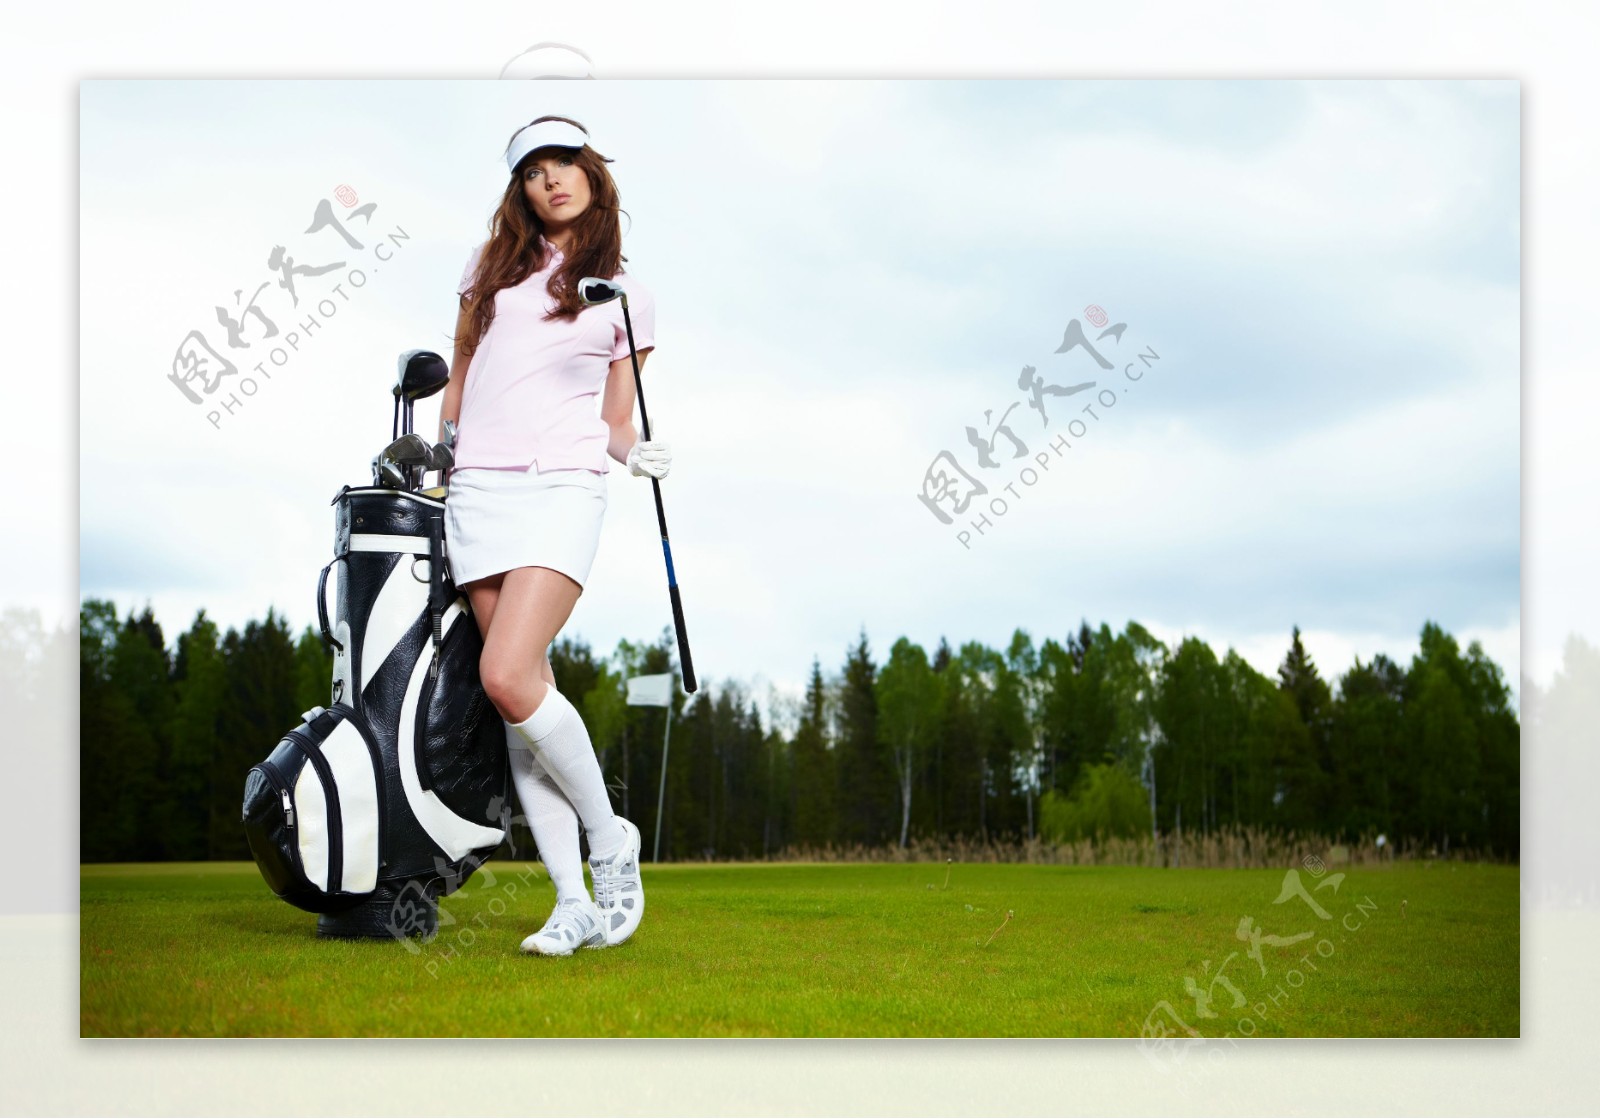 打高尔夫球的美女图片